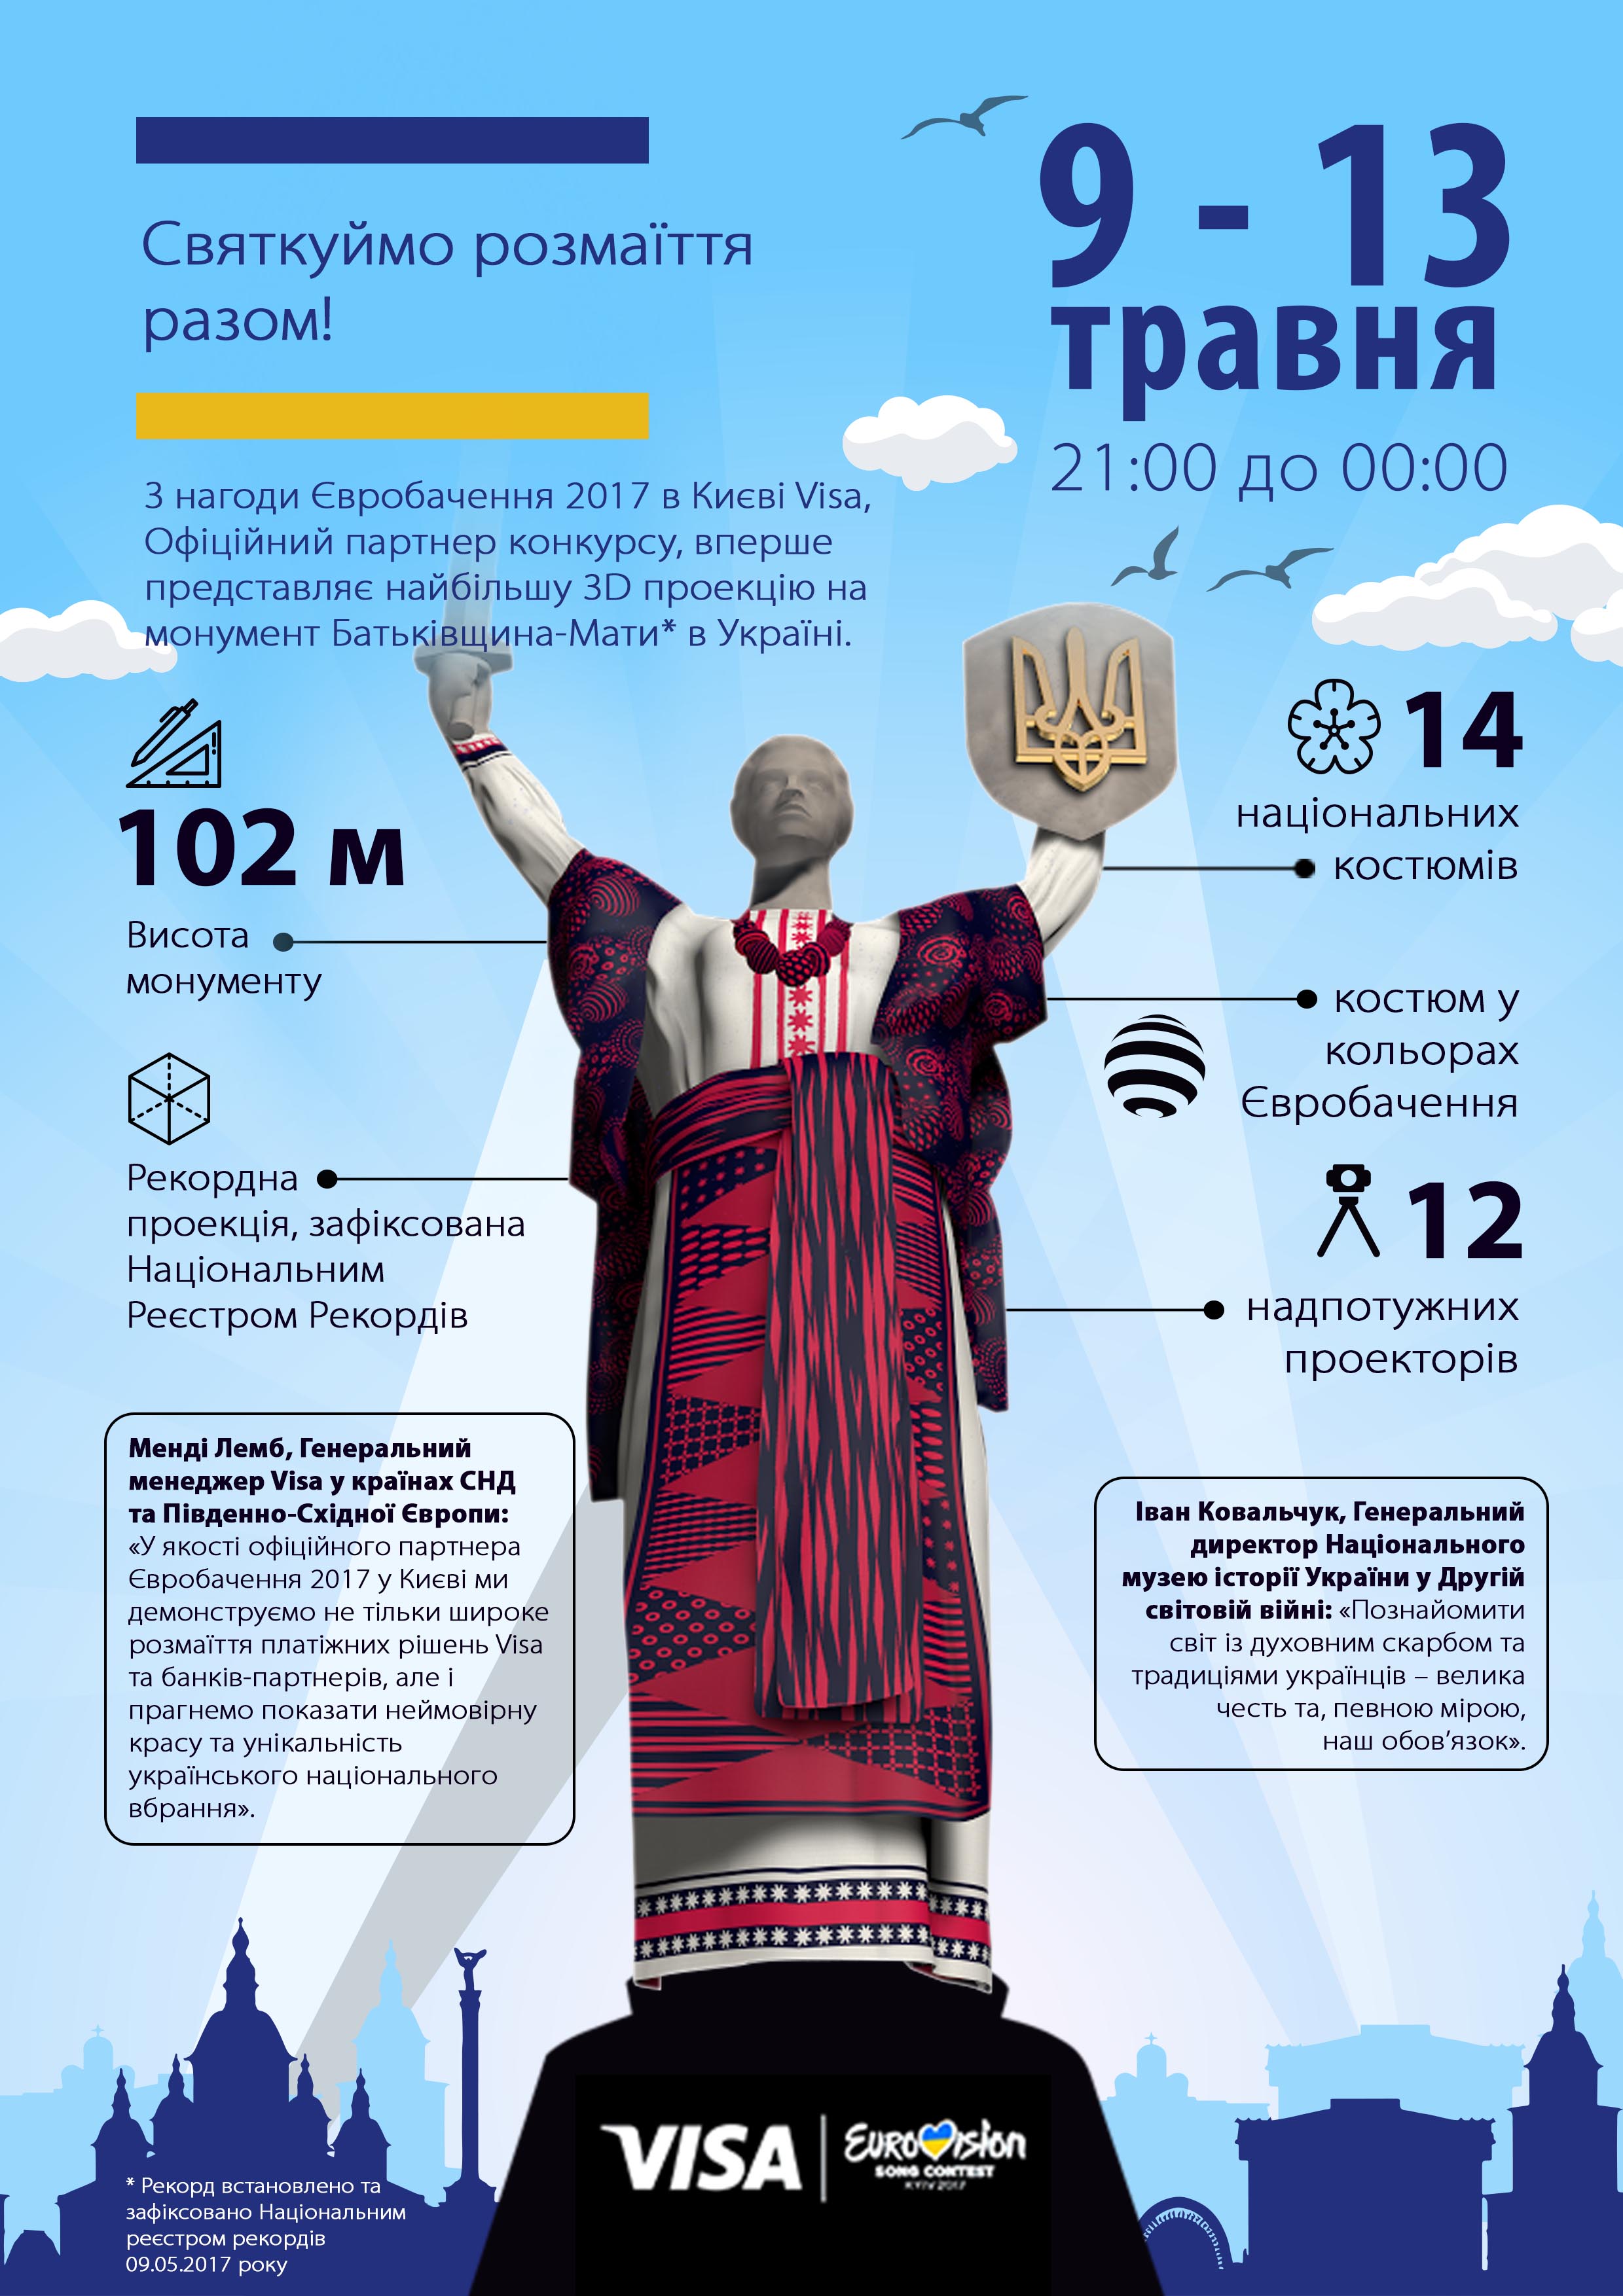 VISA "одела" киевский монумент Родина Мать в голографические этно-костюмы